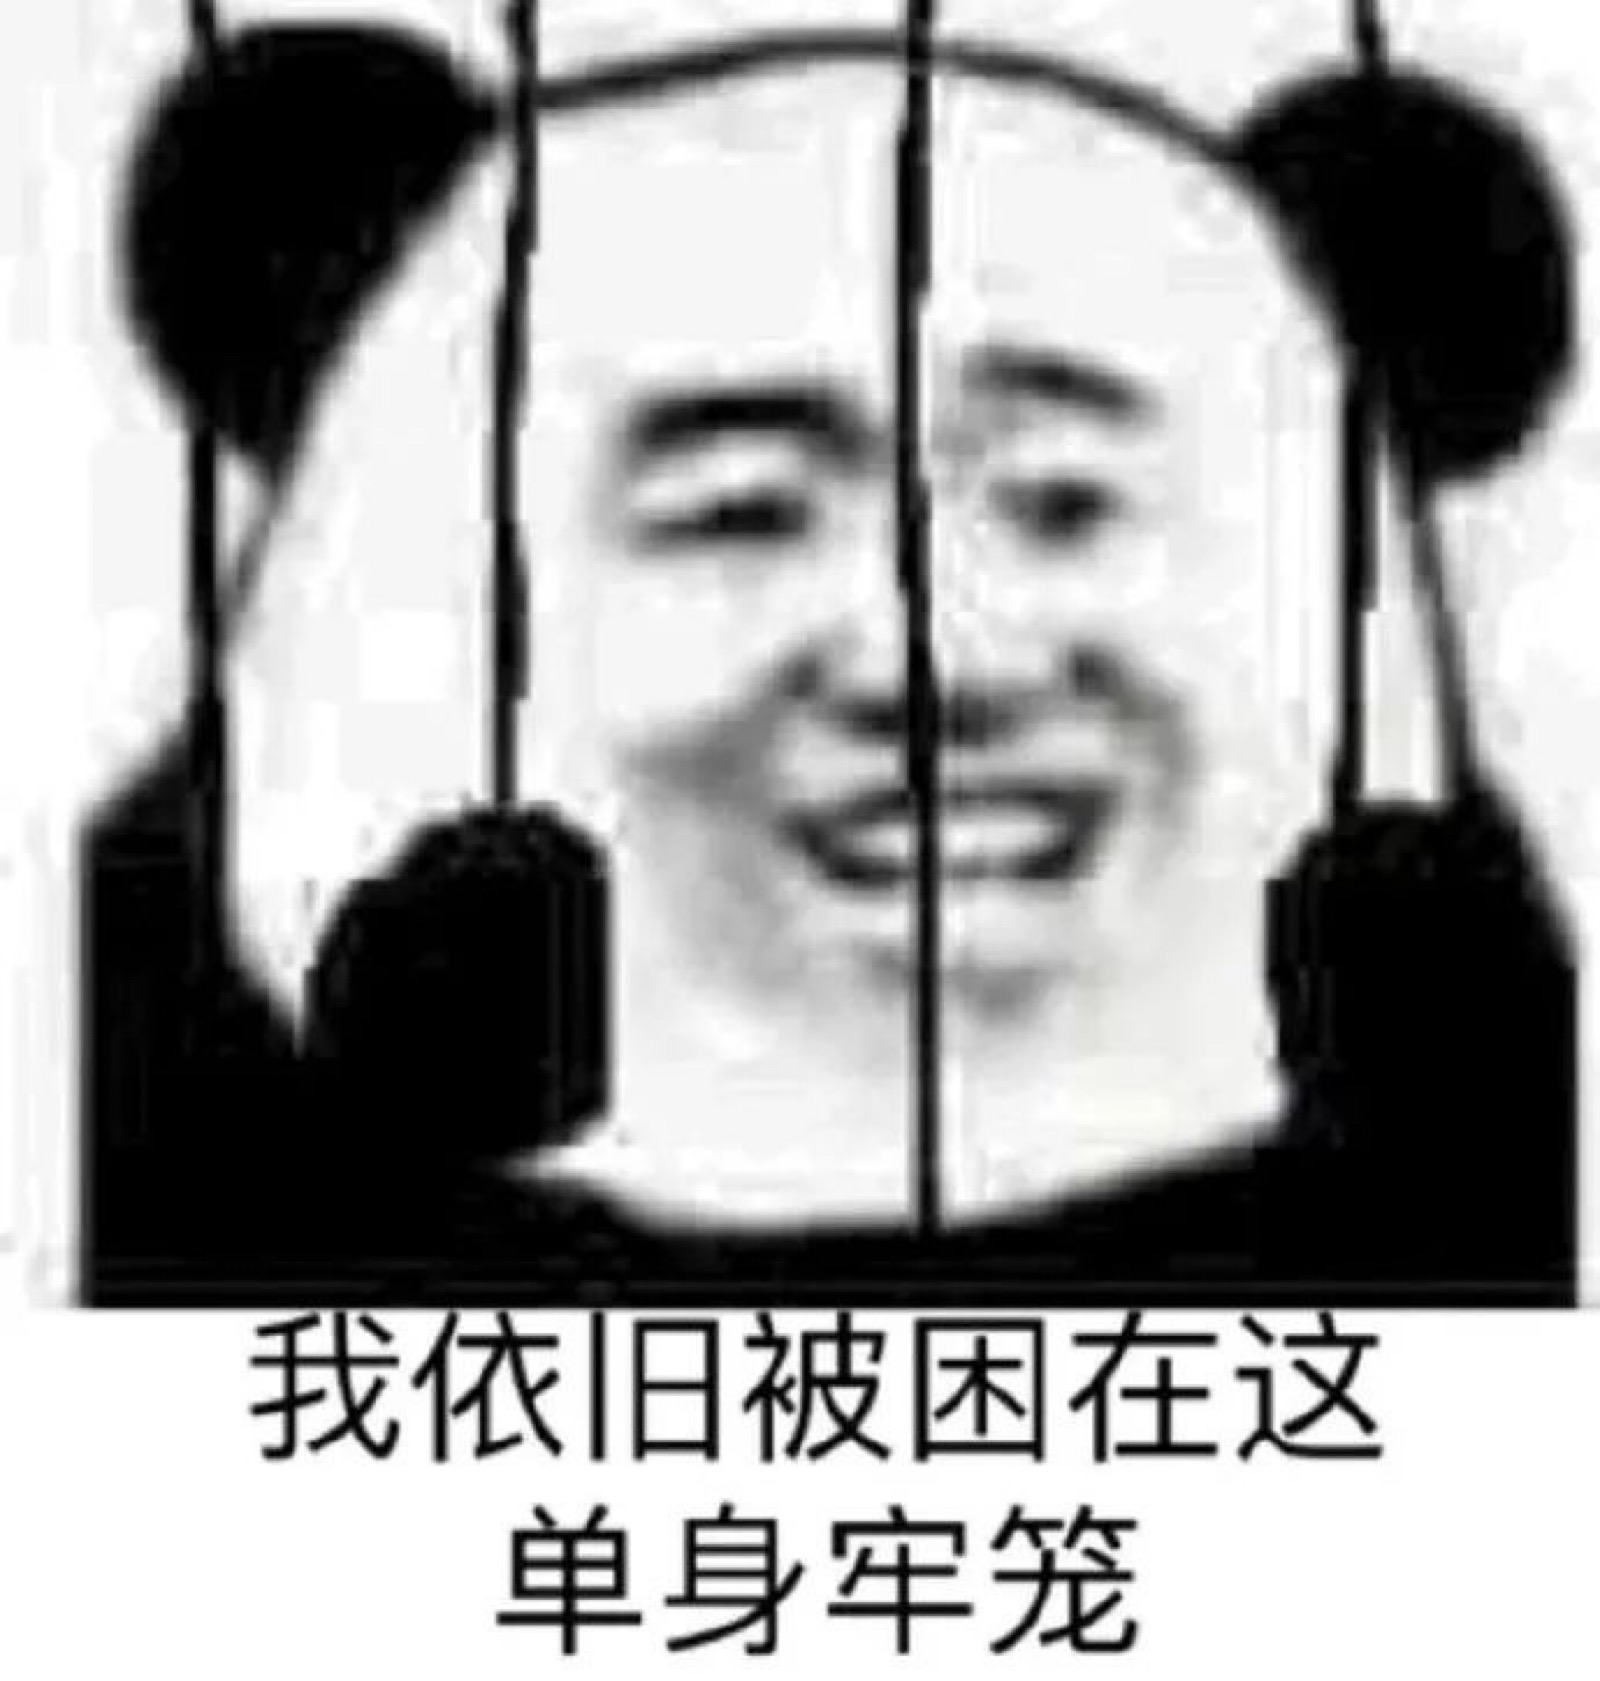 沙雕/文字/搞笑/可爱/熊猫头